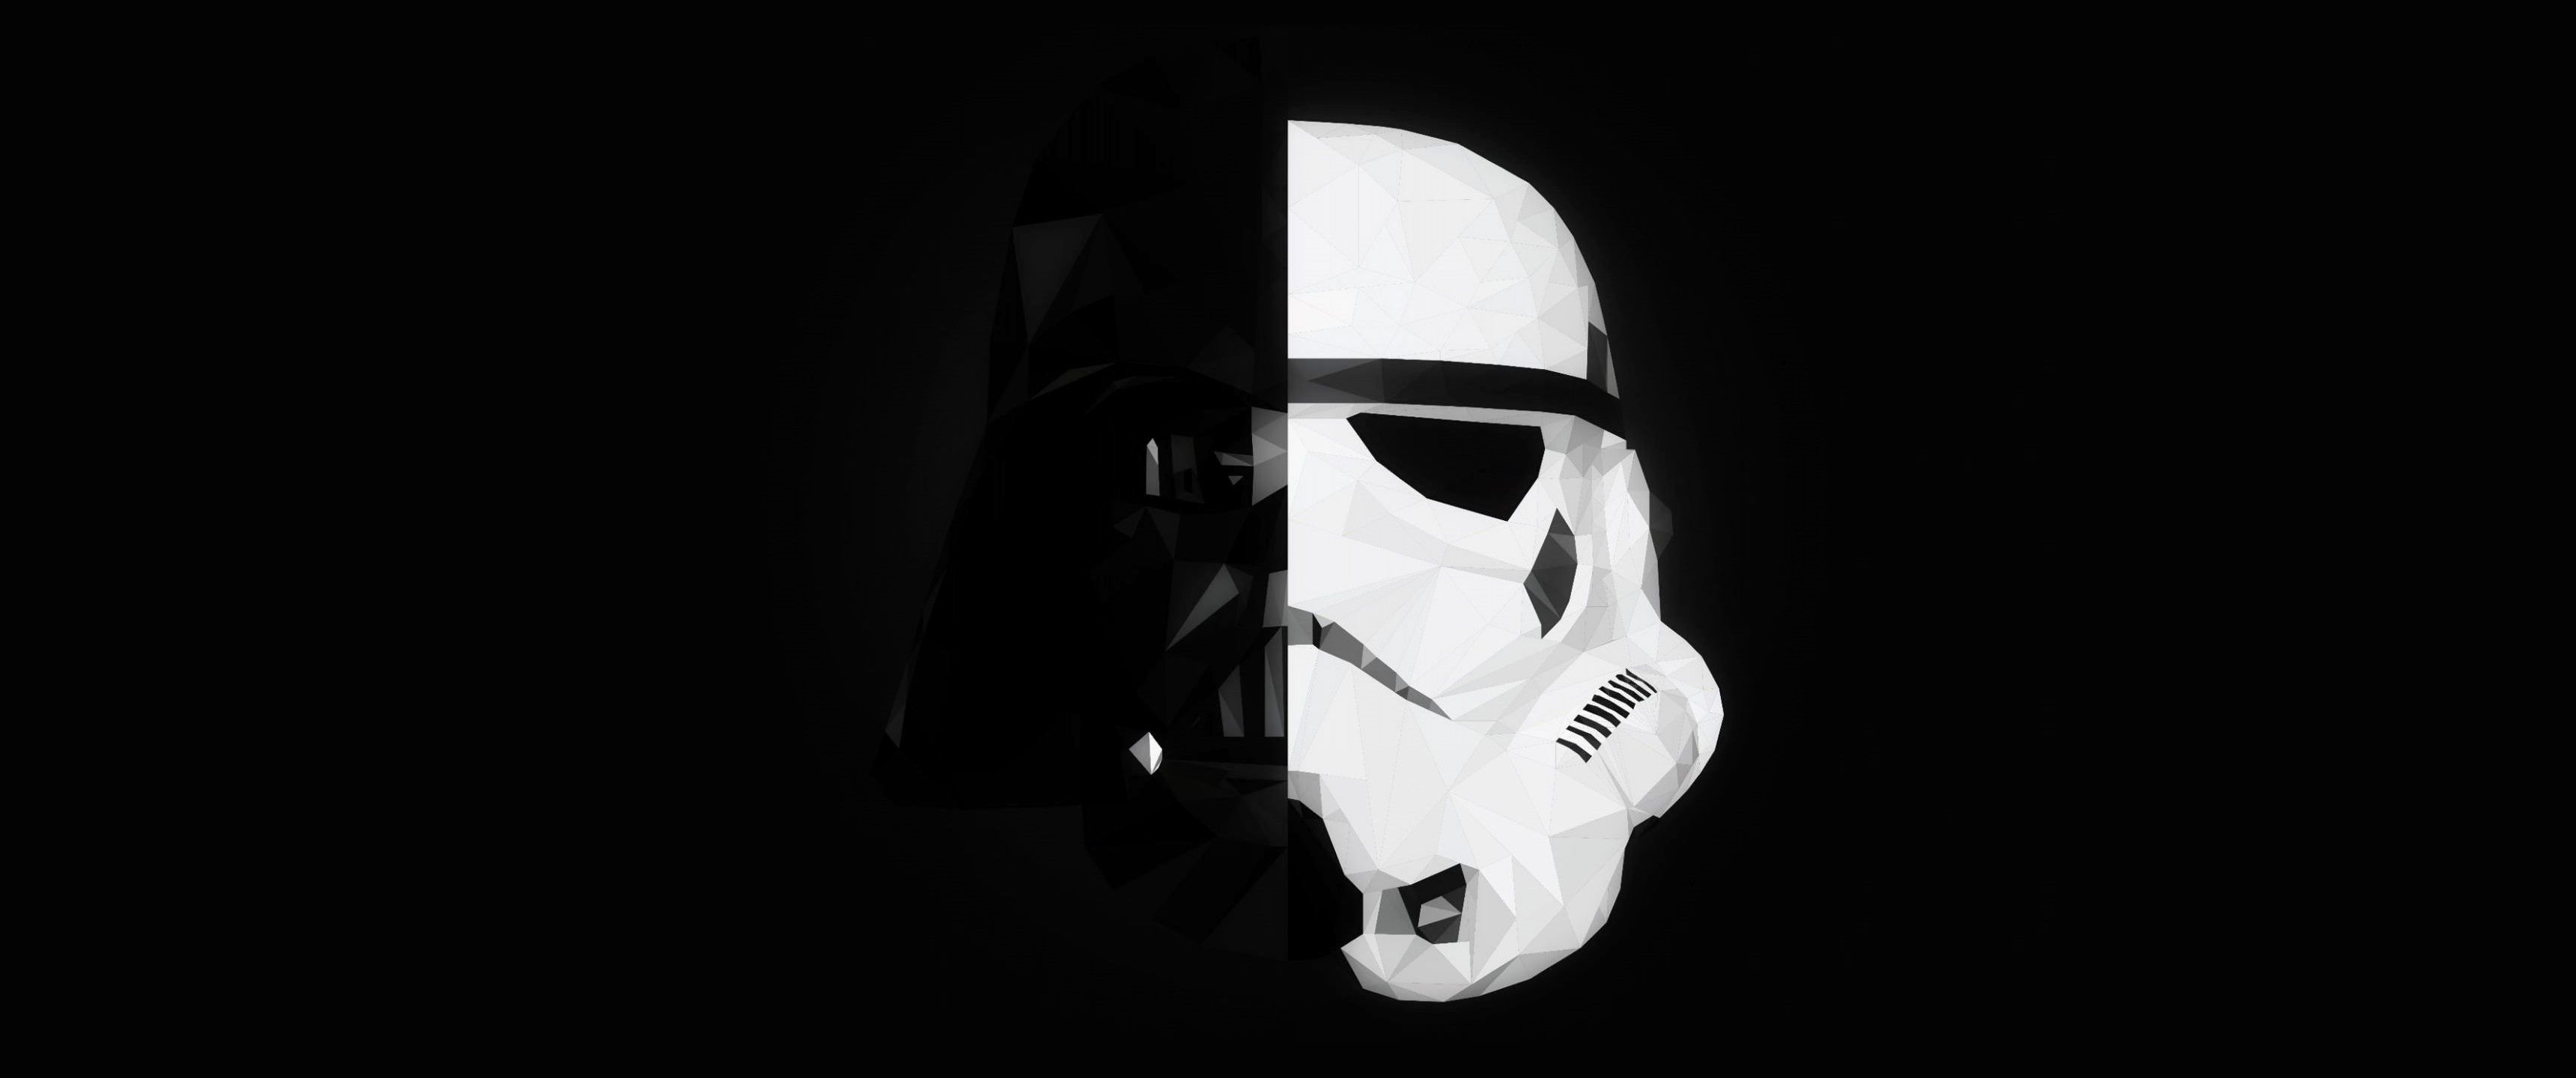 stormtrooper, #Darth Vader, #Star Wars, #mask, #splitting. Dual screen wallpaper, Darth vader wallpaper, Star wars awesome